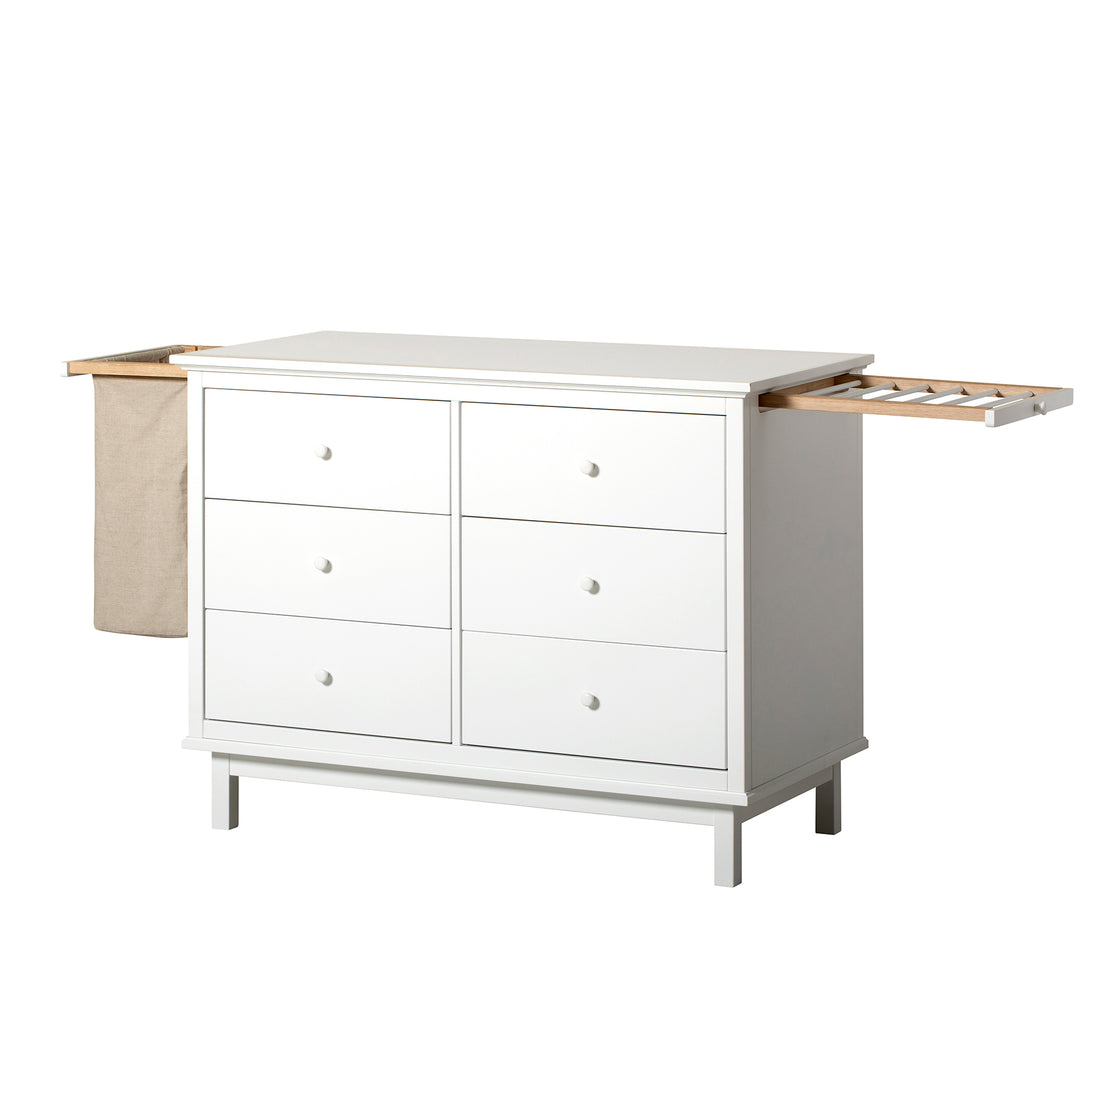 Oliver Furniture Seaside Dresser with 6 Drawers (Pre-Order; Est. Delivery in 6-10 Weeks)